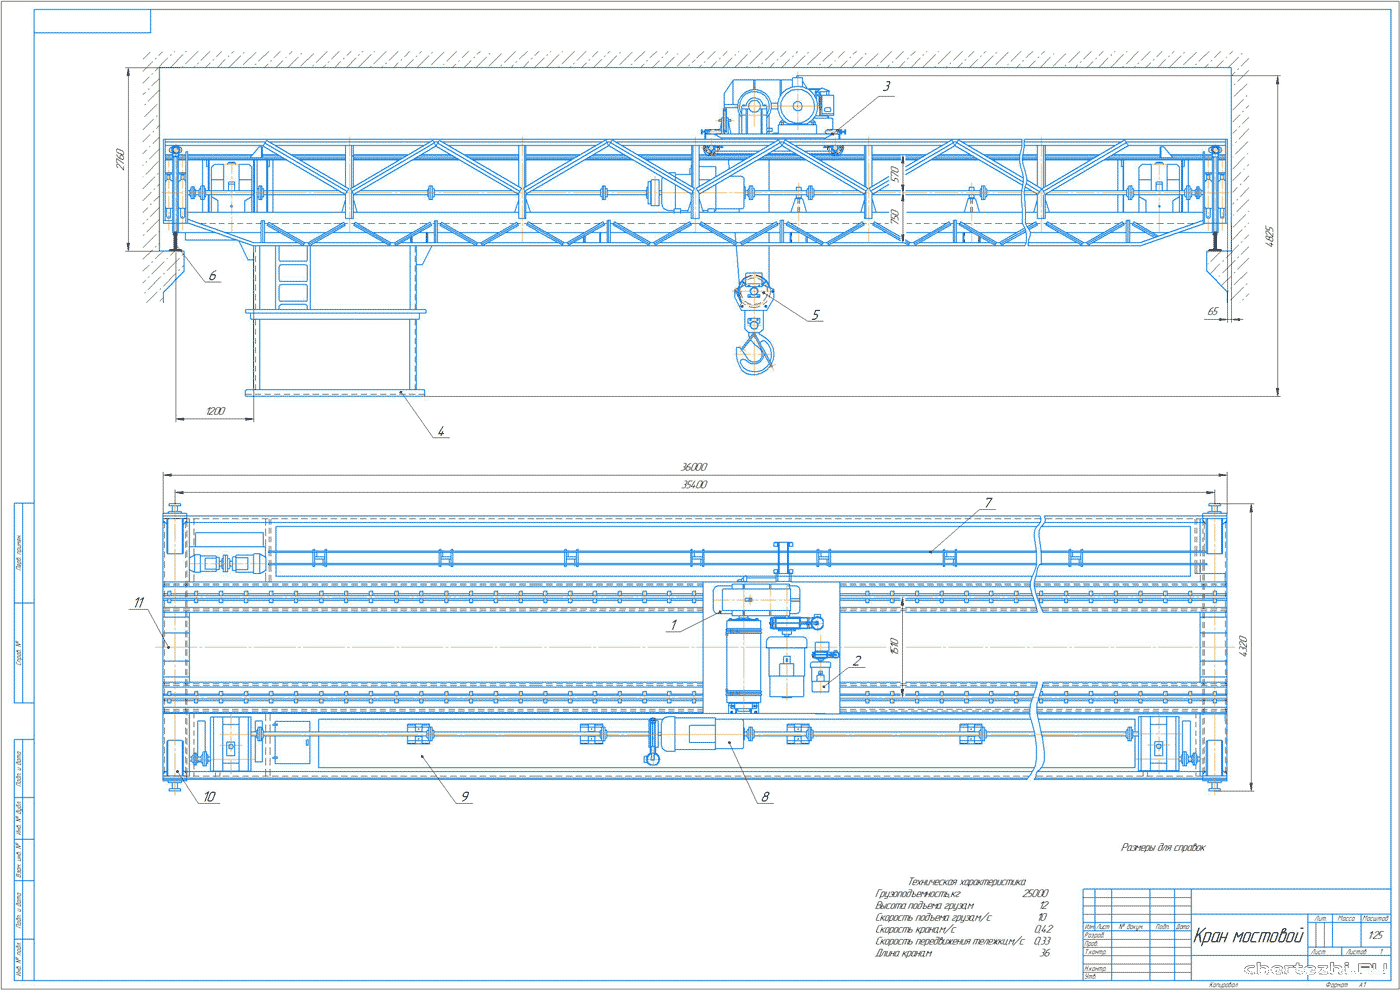 Курсовая работа по теме Балки подкрановые стальные для мостовых электрических кранов общего назначения грузоподъемностью до 50 т